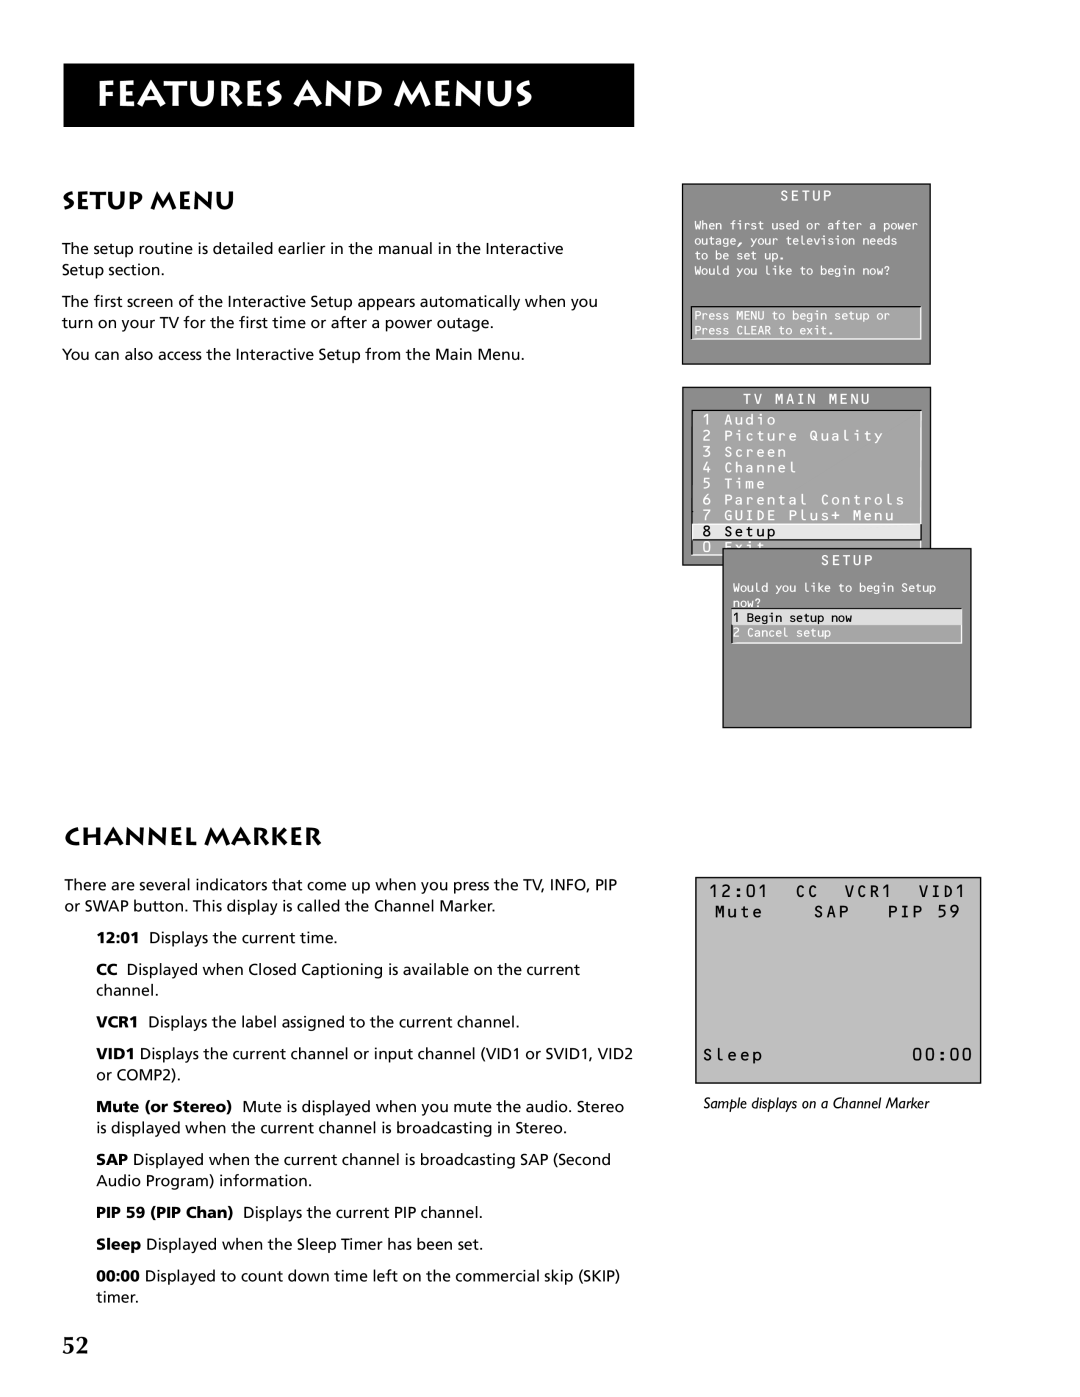 RCA F32691 manual Setup Menu, Channel Marker, Features And Menus, 1201, CC VCR1 VID1, Mute, Sap Pip, Sleep0000 